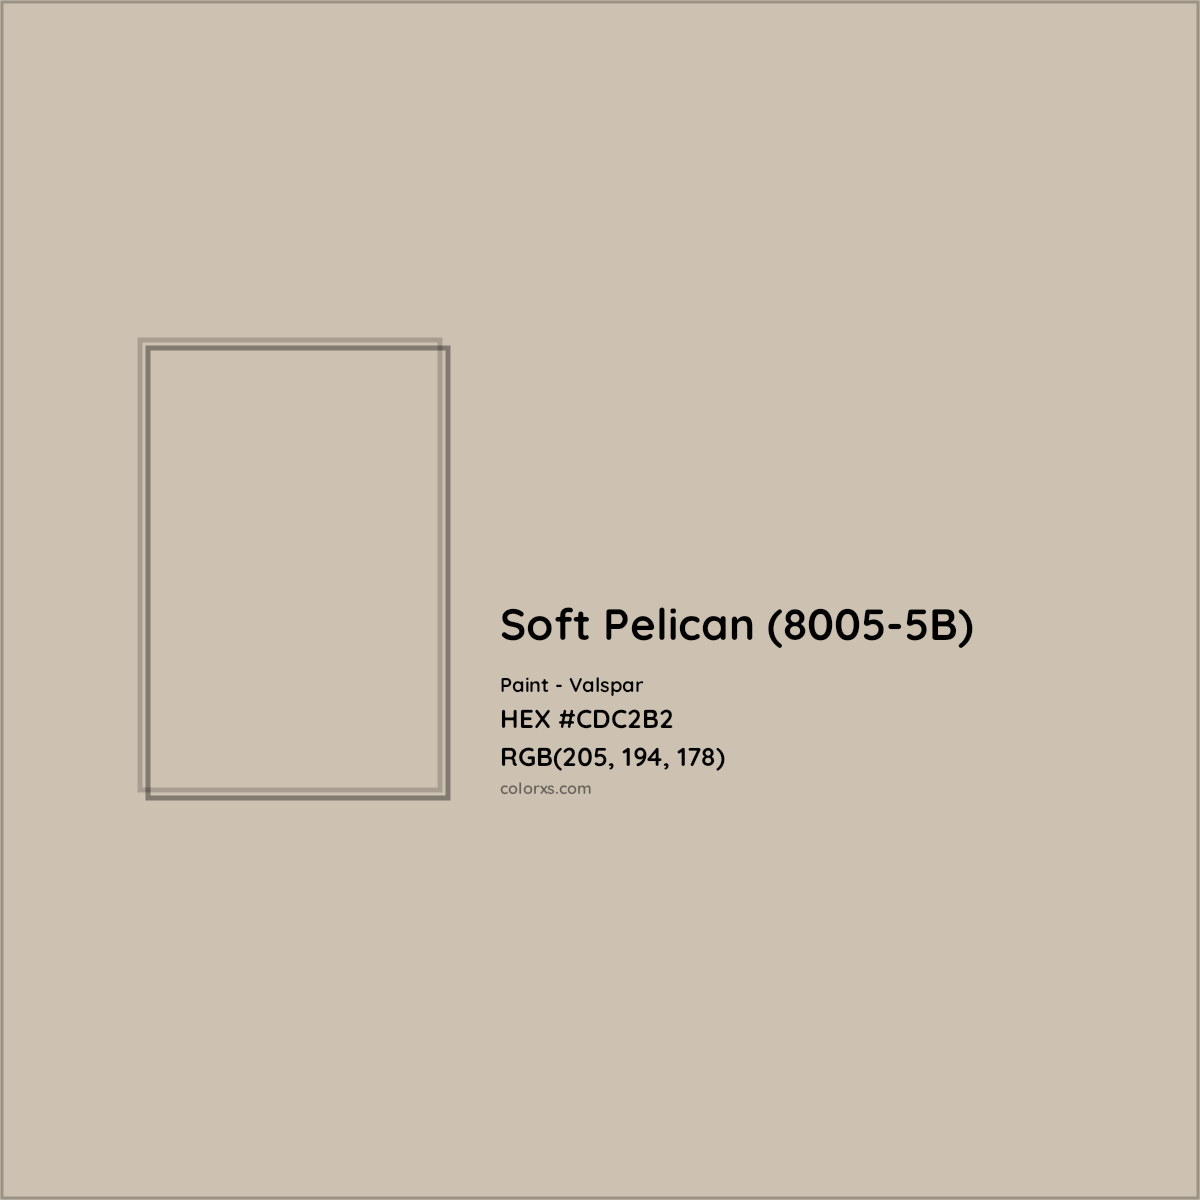 HEX #CDC2B2 Soft Pelican (8005-5B) Paint Valspar - Color Code